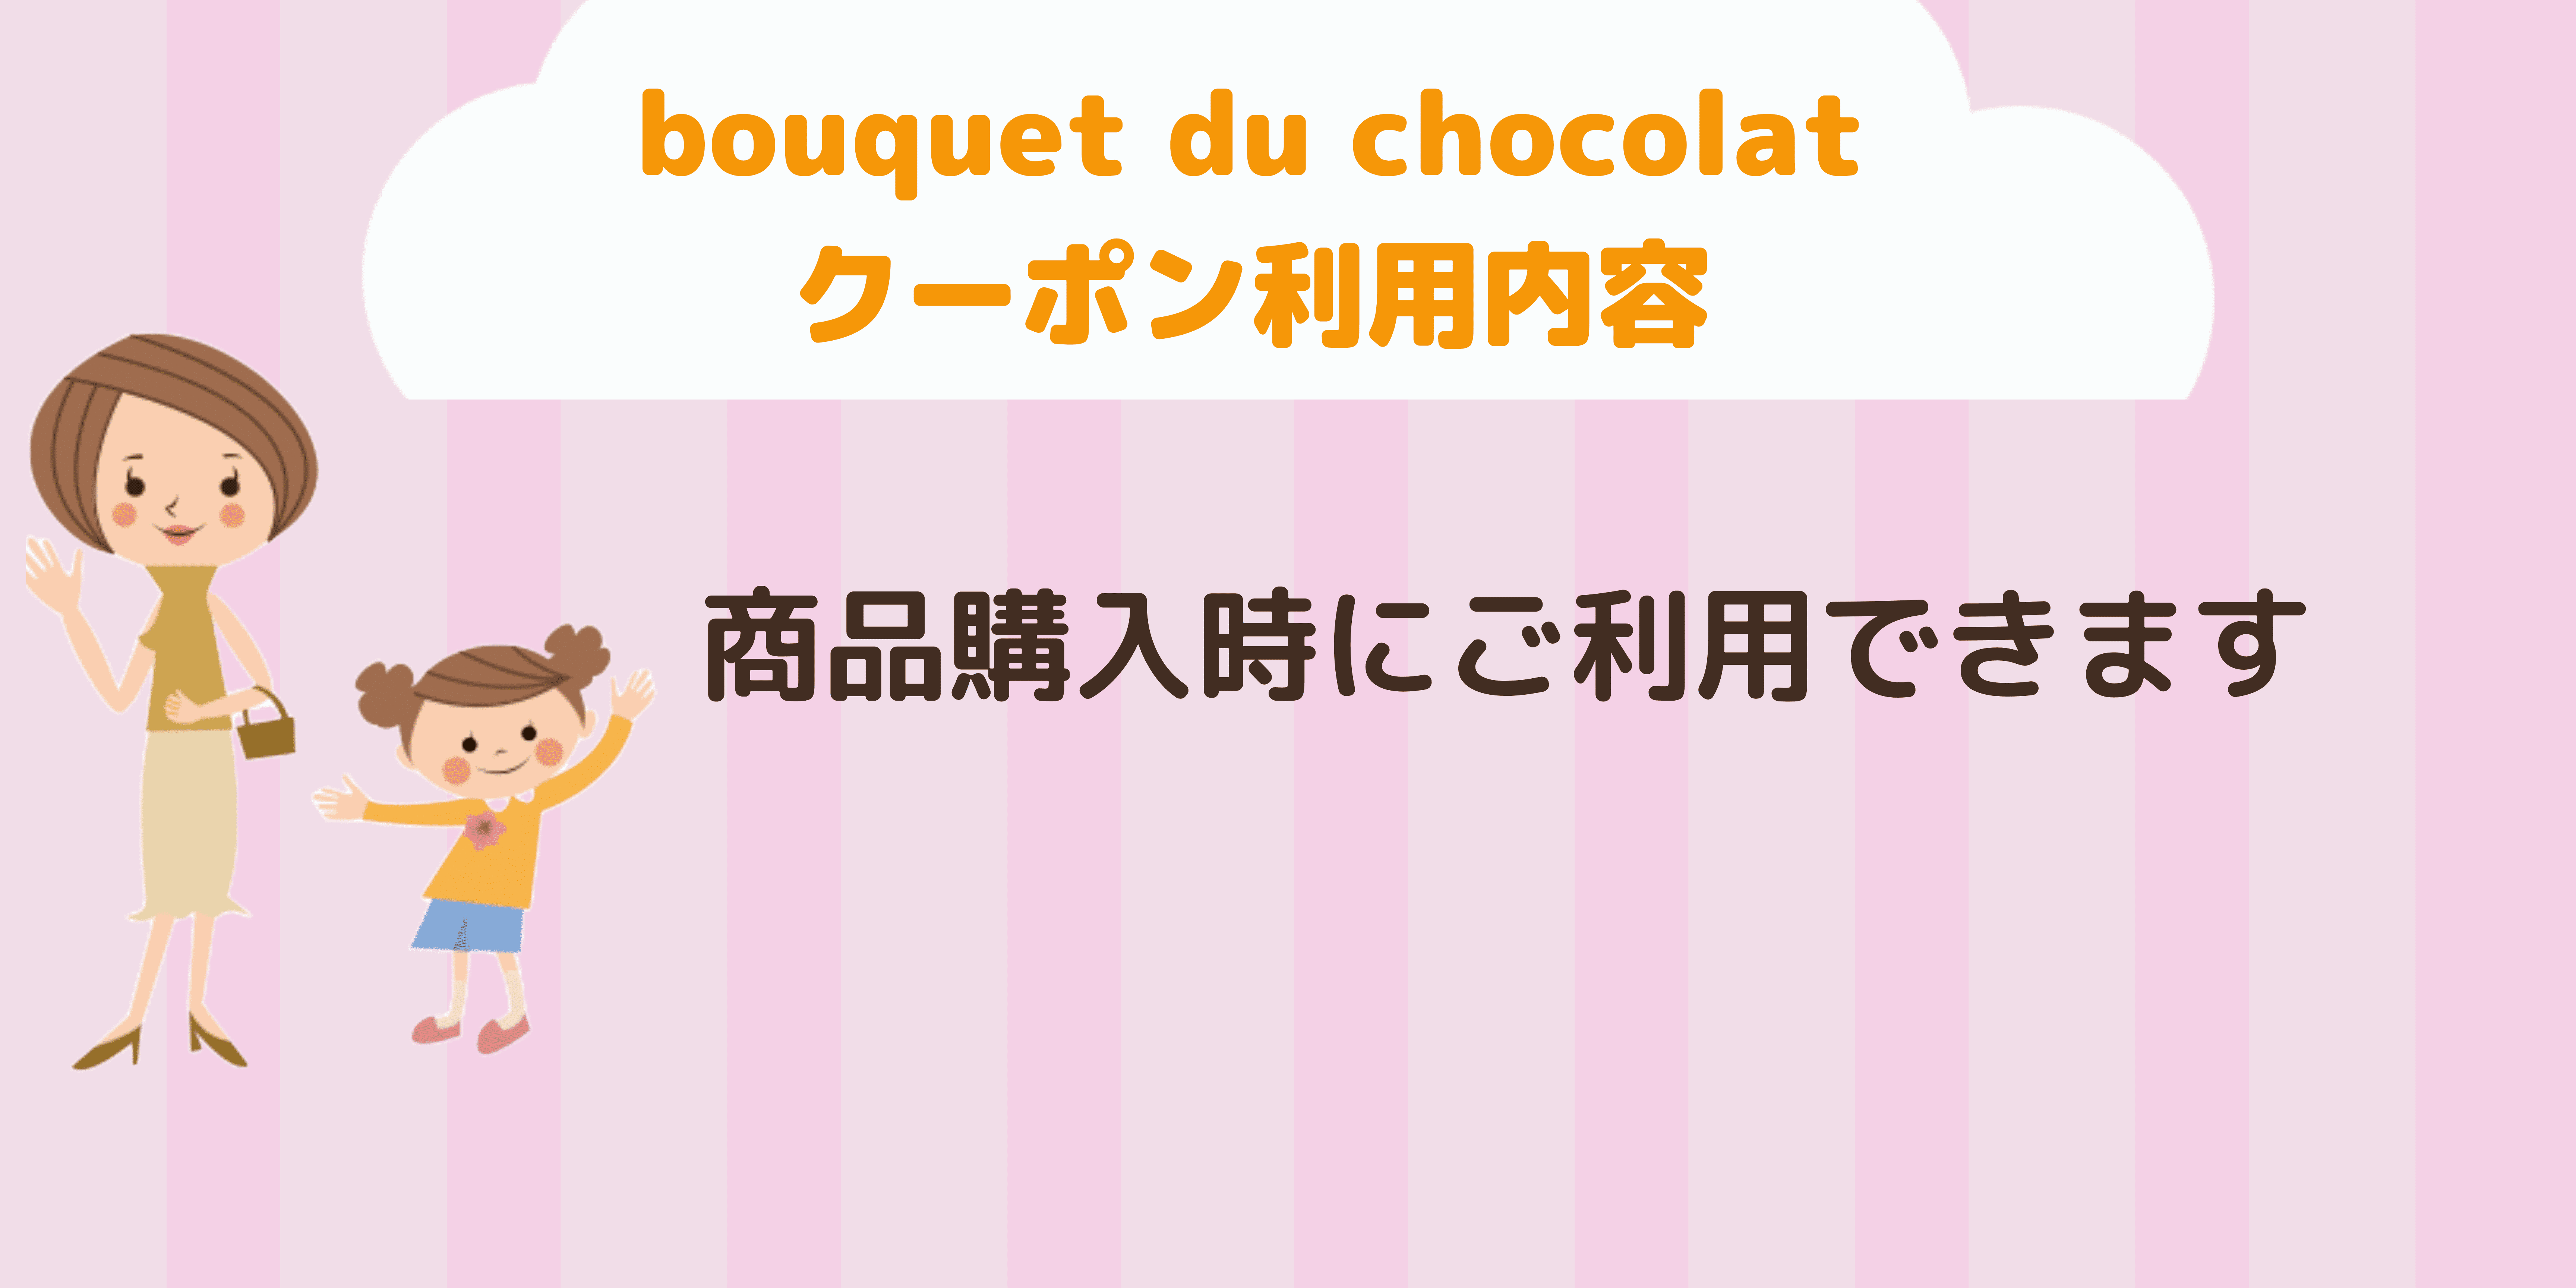 bouquet du chocolat